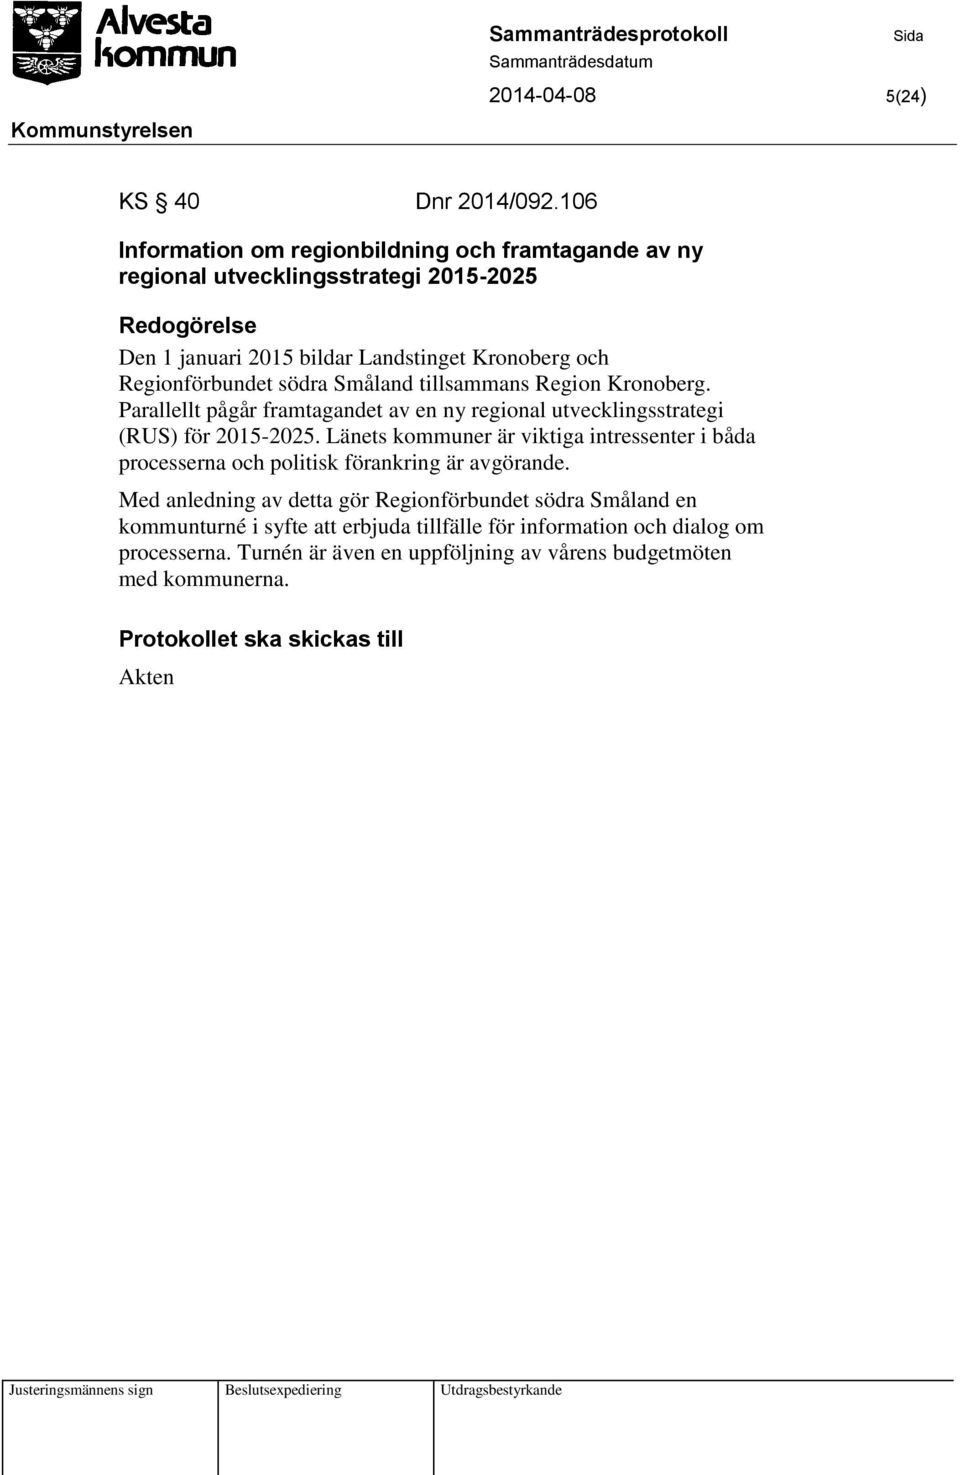 Regionförbundet södra Småland tillsammans Region Kronoberg. Parallellt pågår framtagandet av en ny regional utvecklingsstrategi (RUS) för 2015-2025.